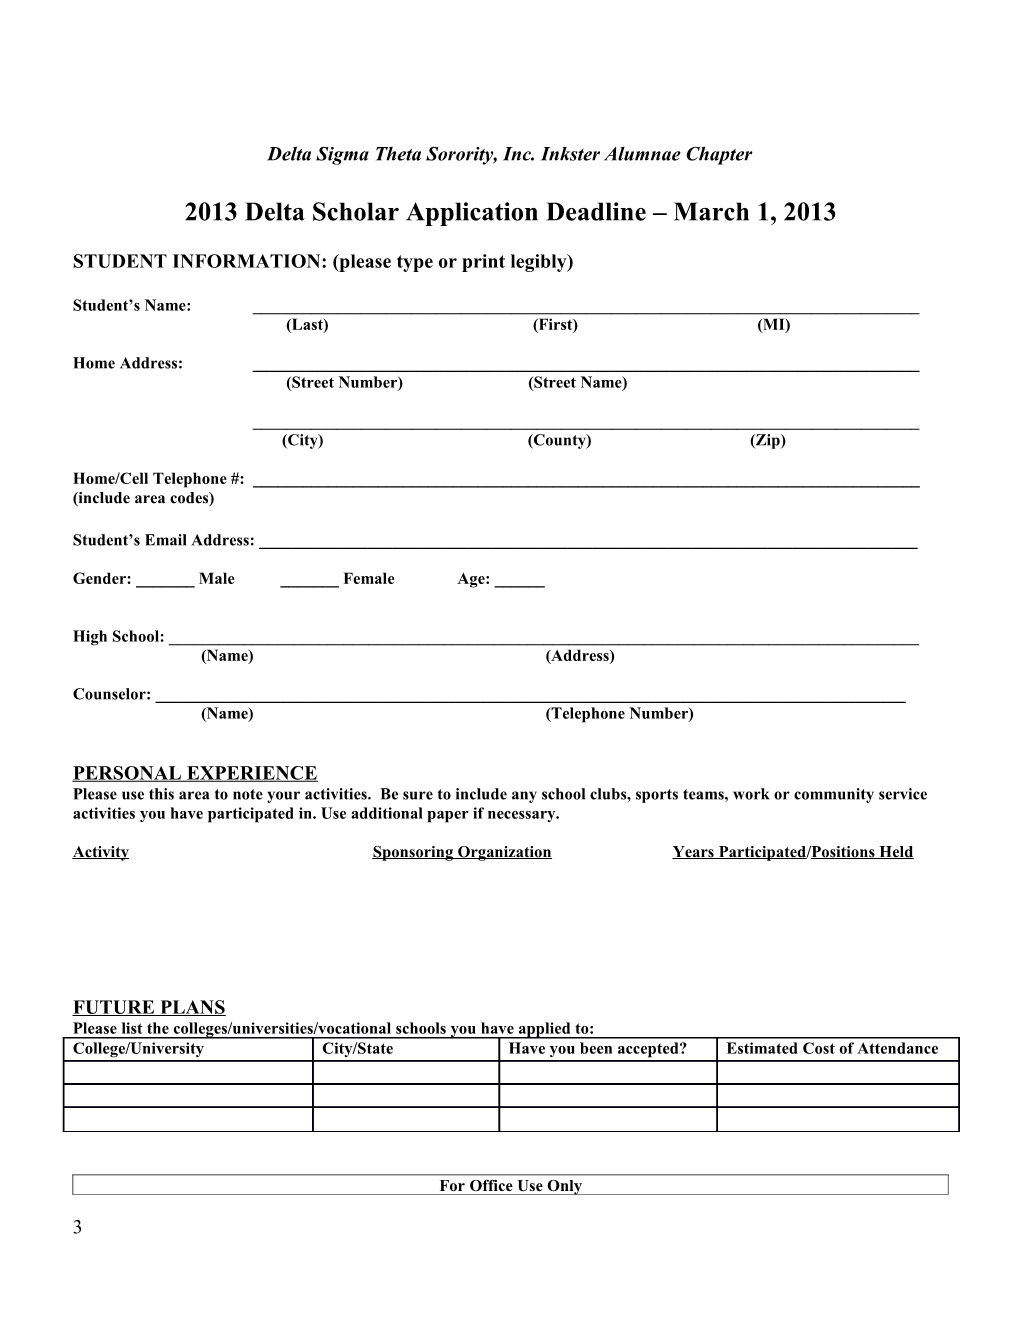 2008 Delta Scholar Application Packet